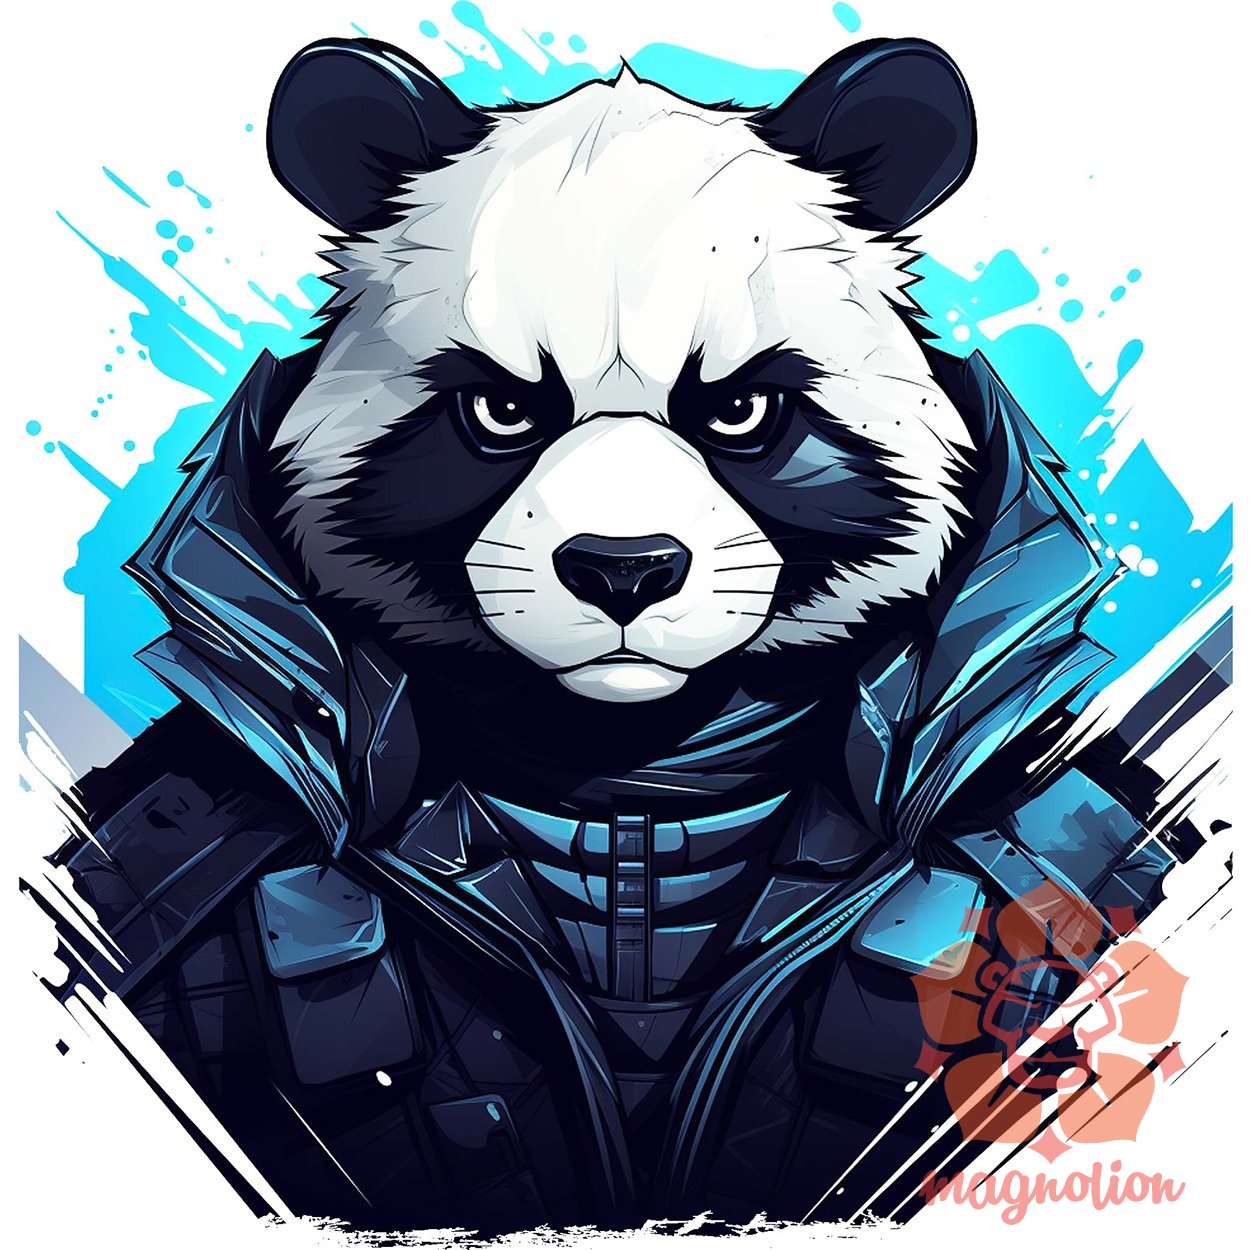 Cyberpunk panda v4